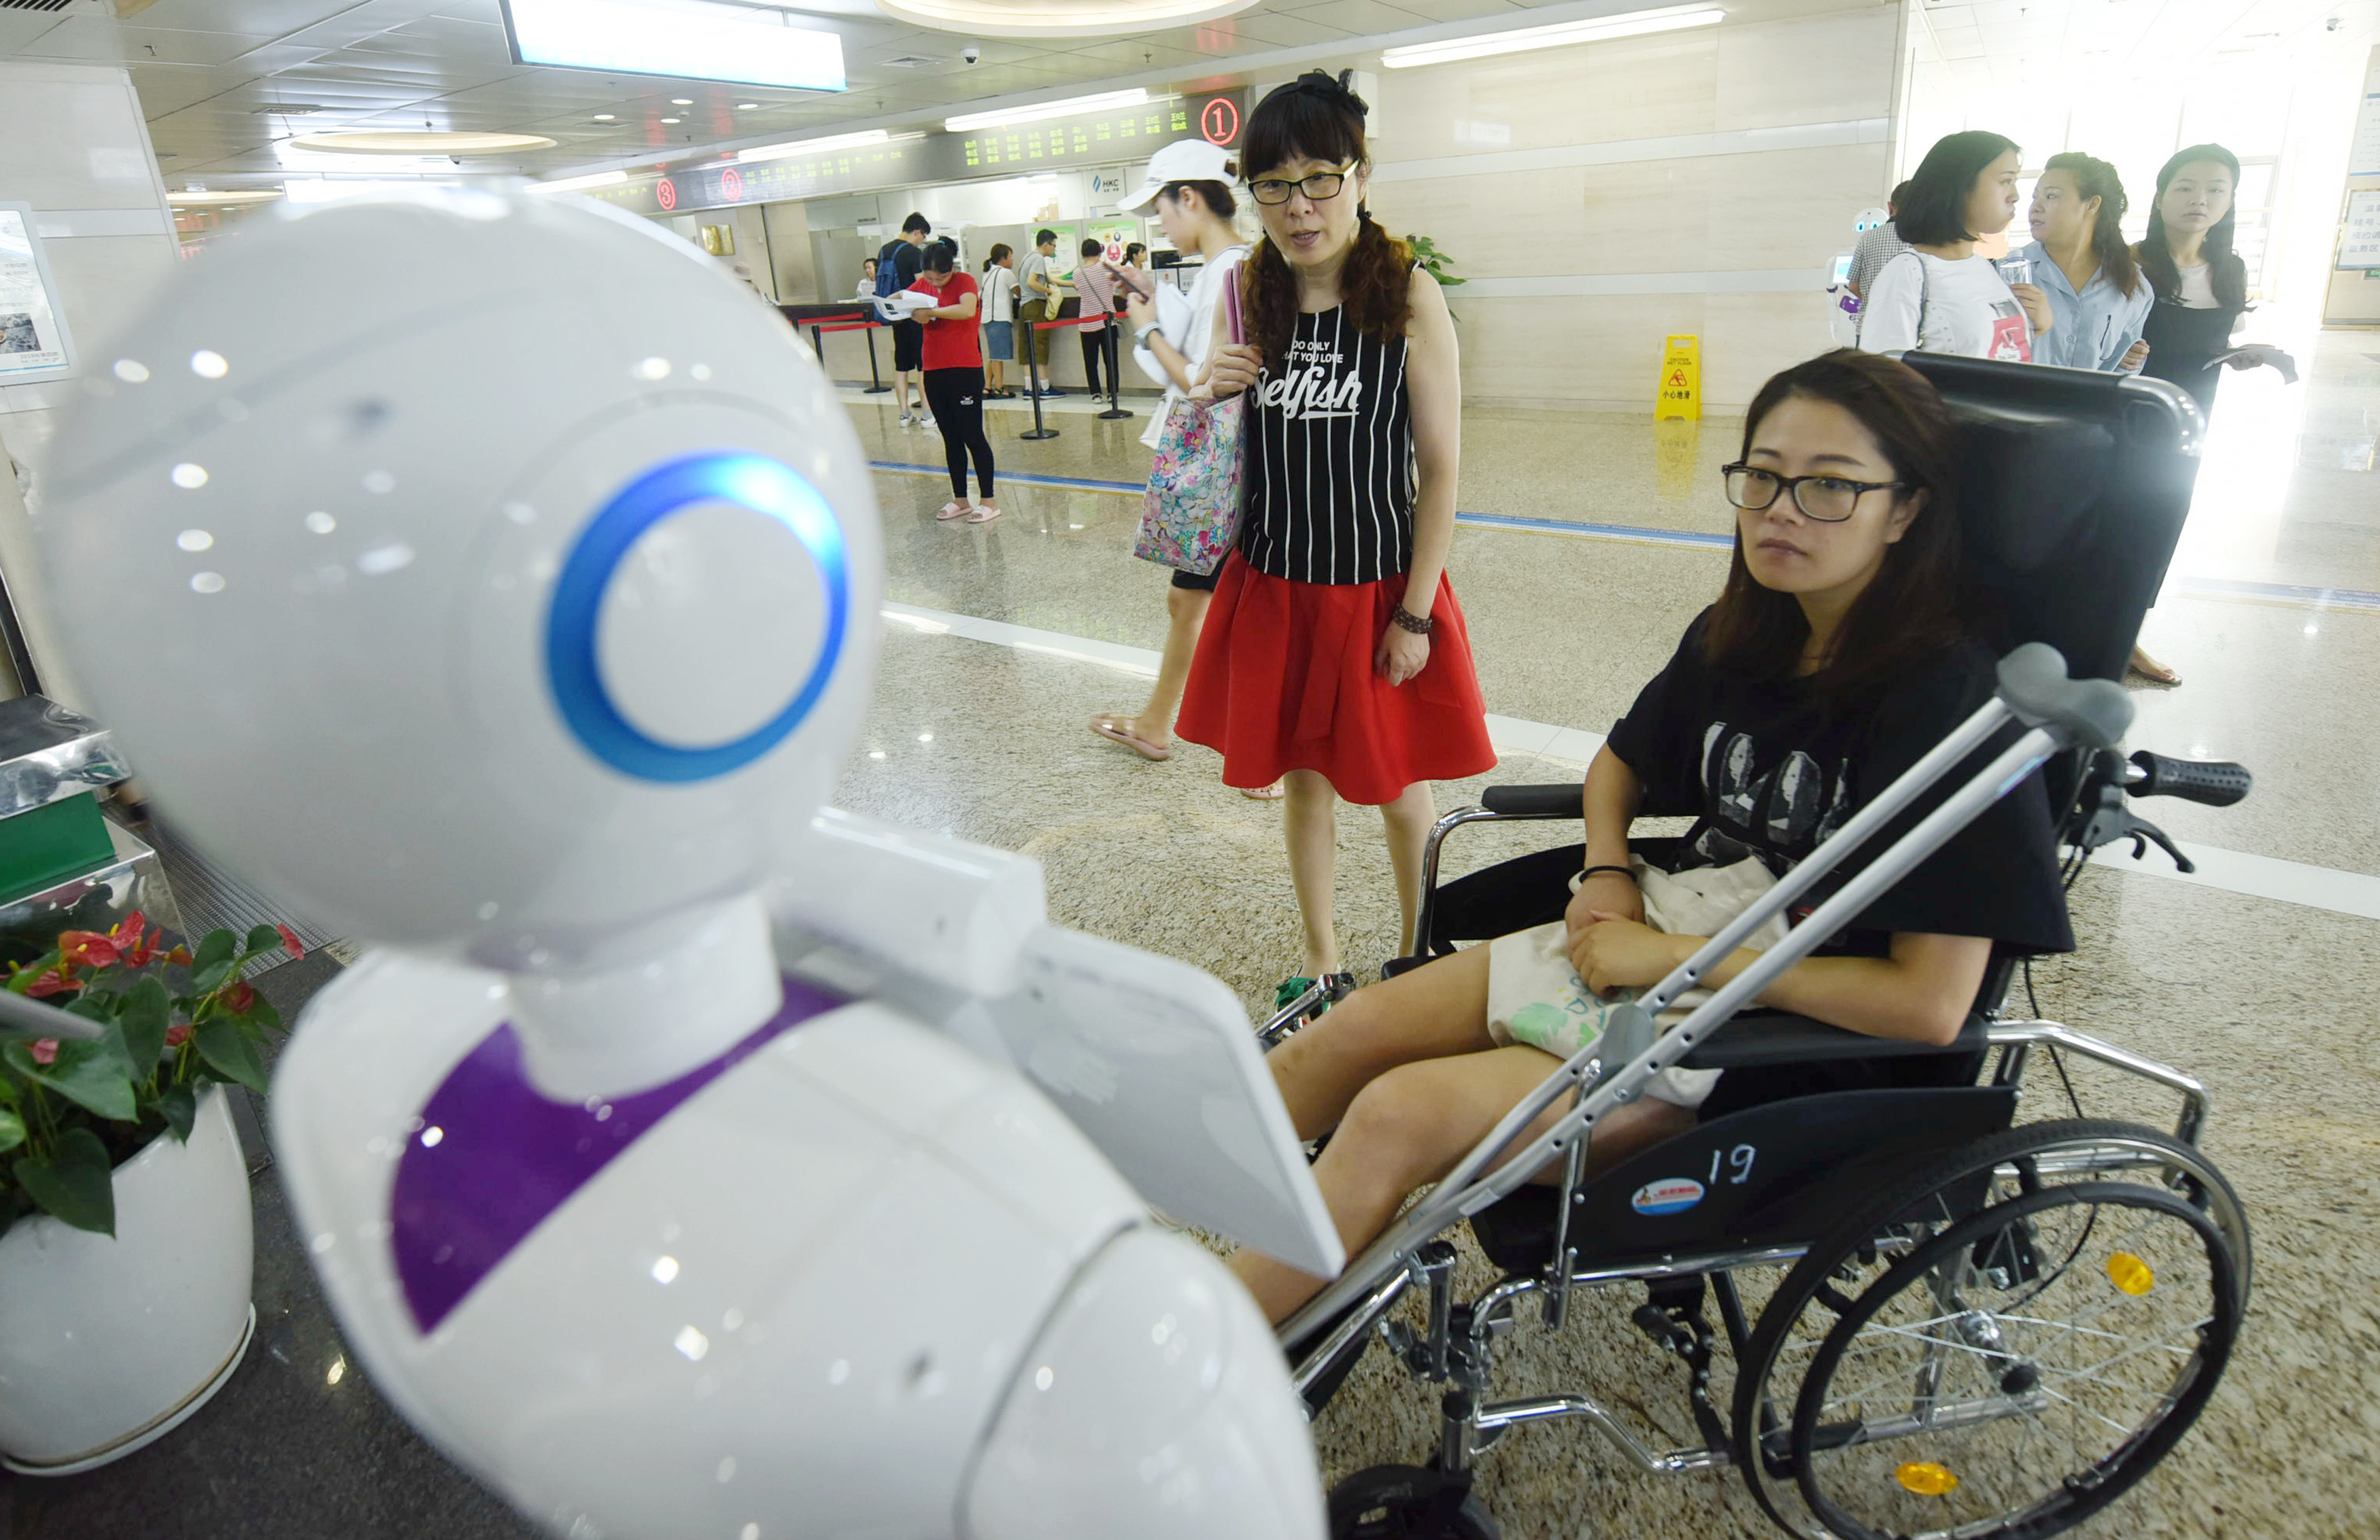 A Xiaoyi nevű robot útba igazítja a pácienseket egy kínai kórházban